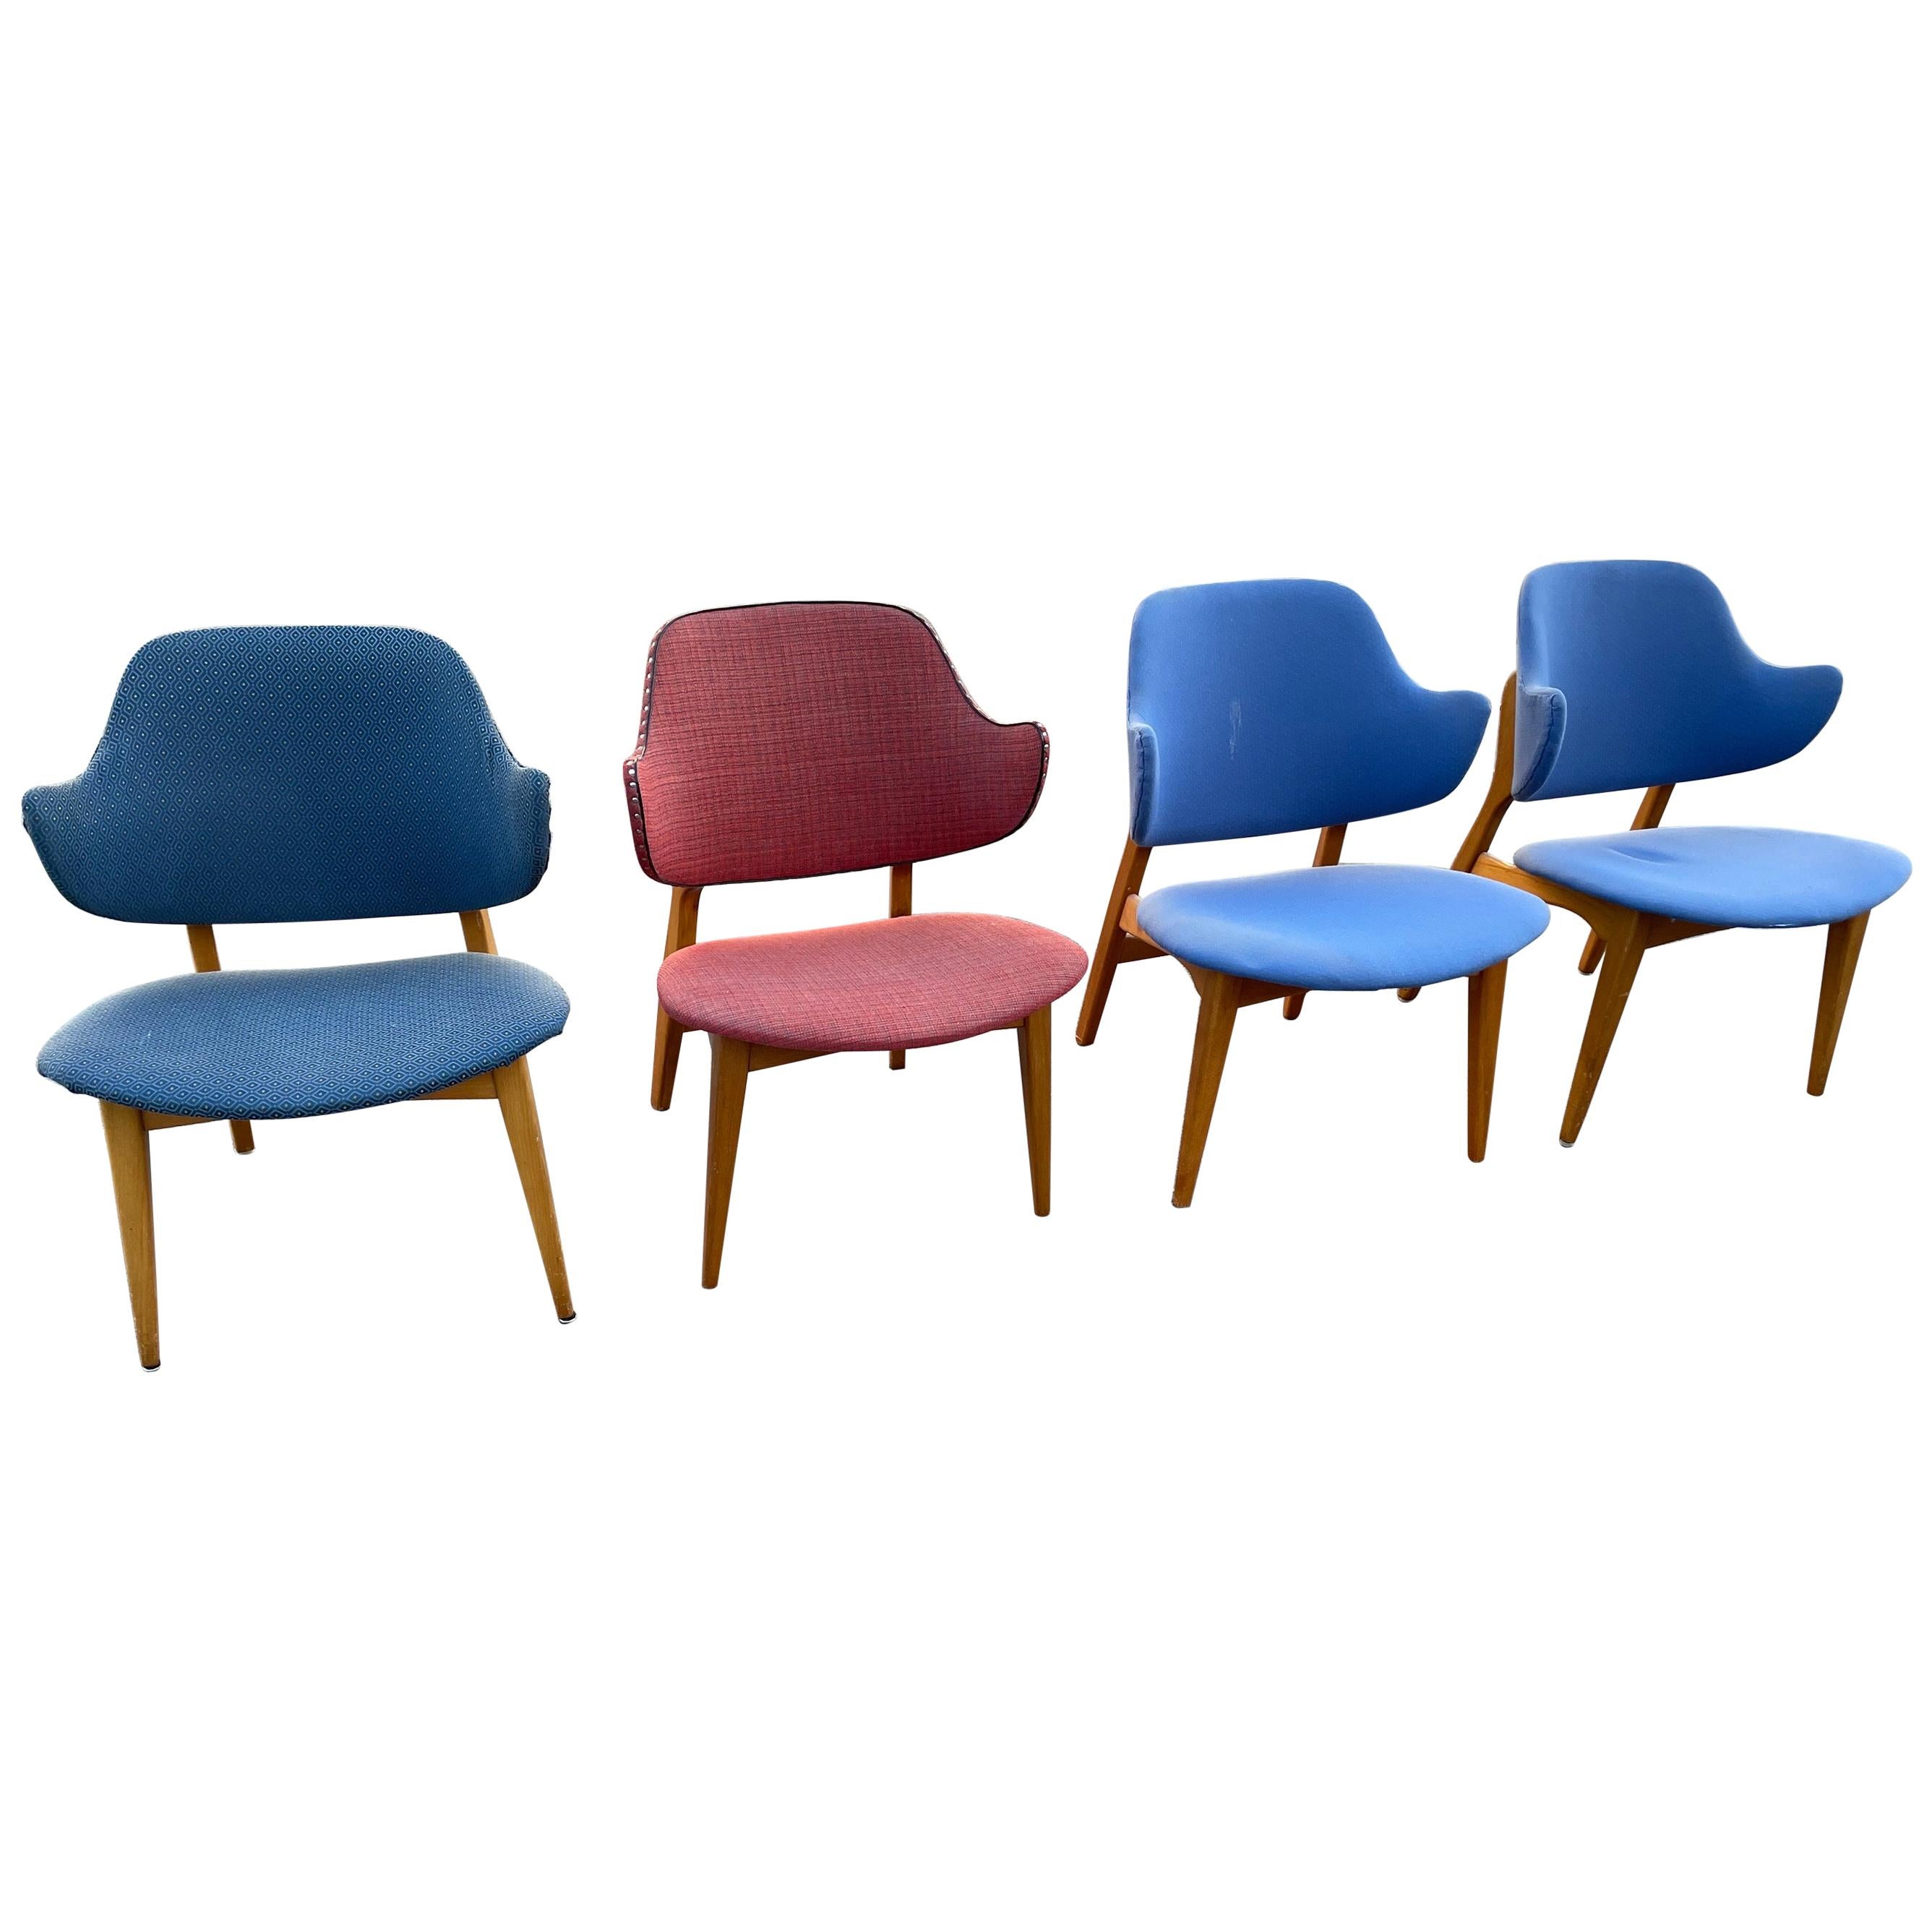 Winnie Chairs by Ikea, 1950s